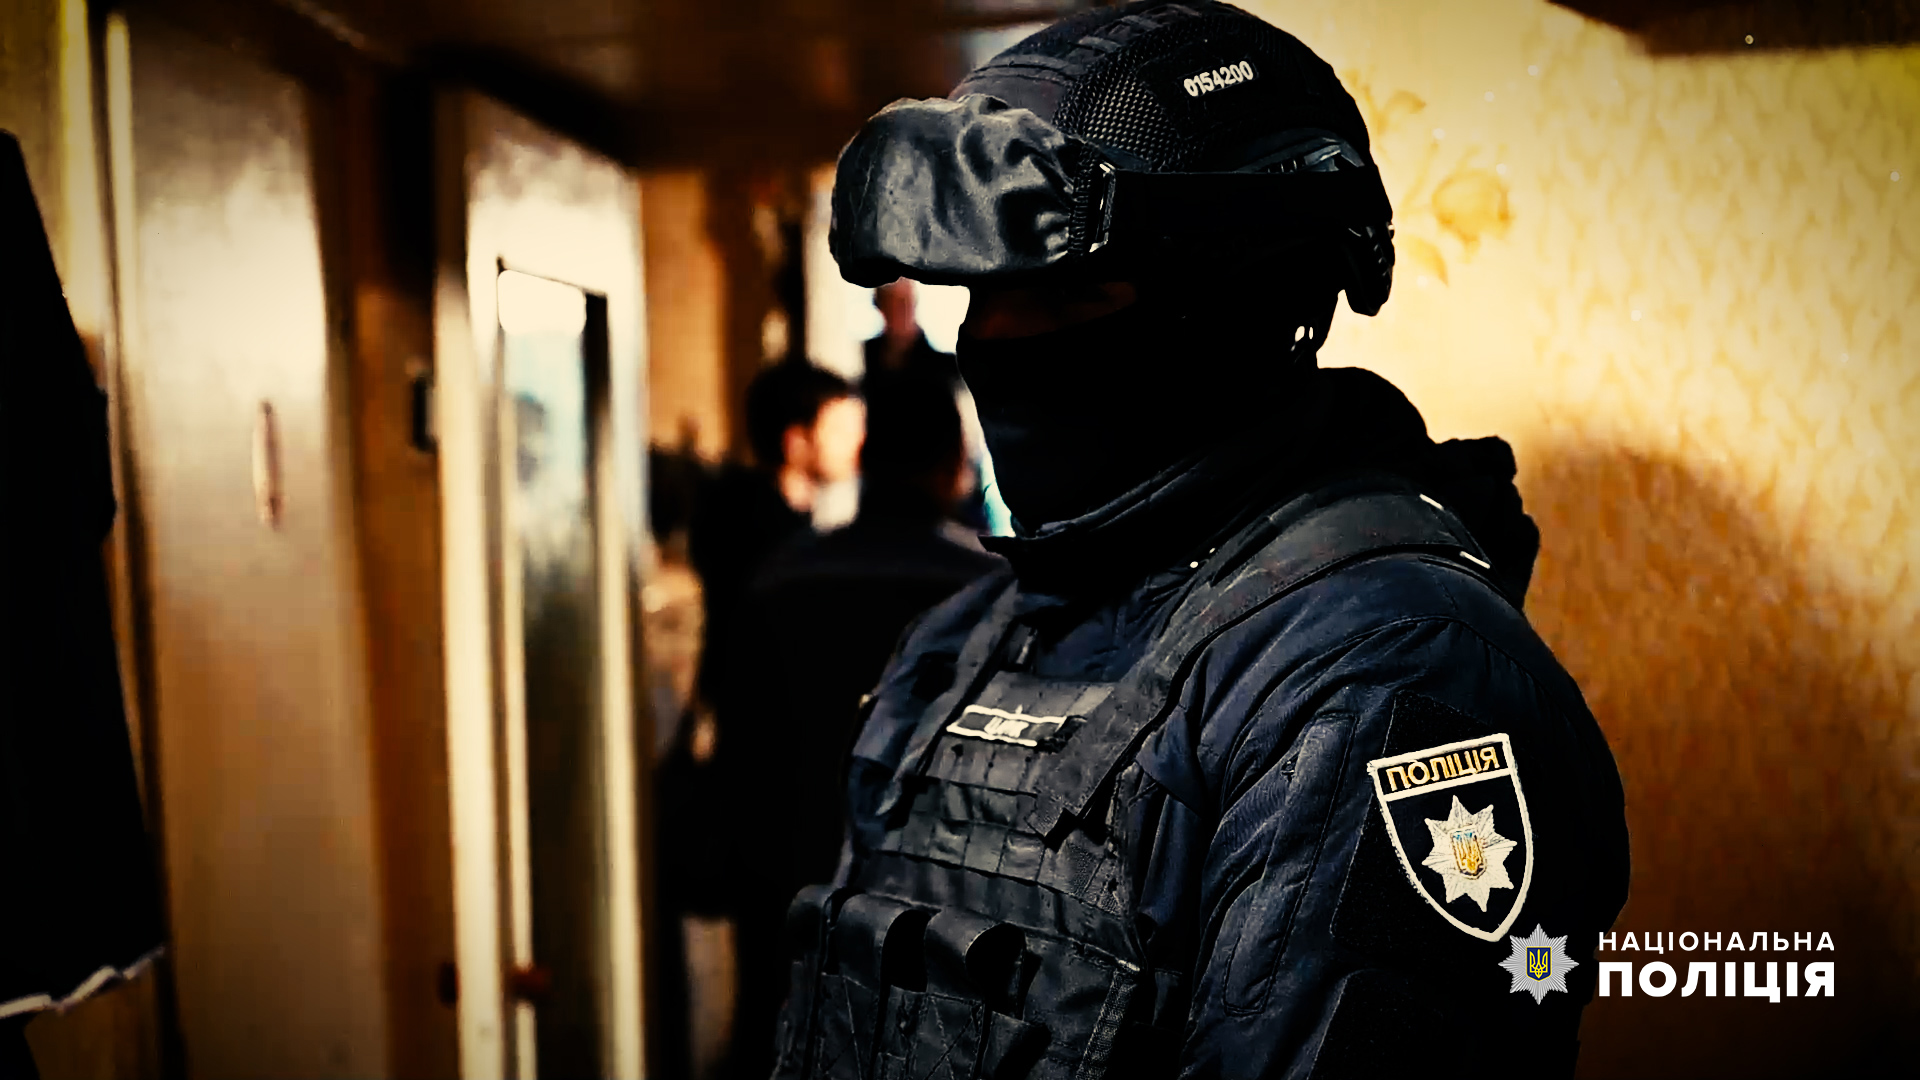 Поліція Буковини: “У Чернівецькій області криміногенна ситуація залишається стабільно контрольованою”